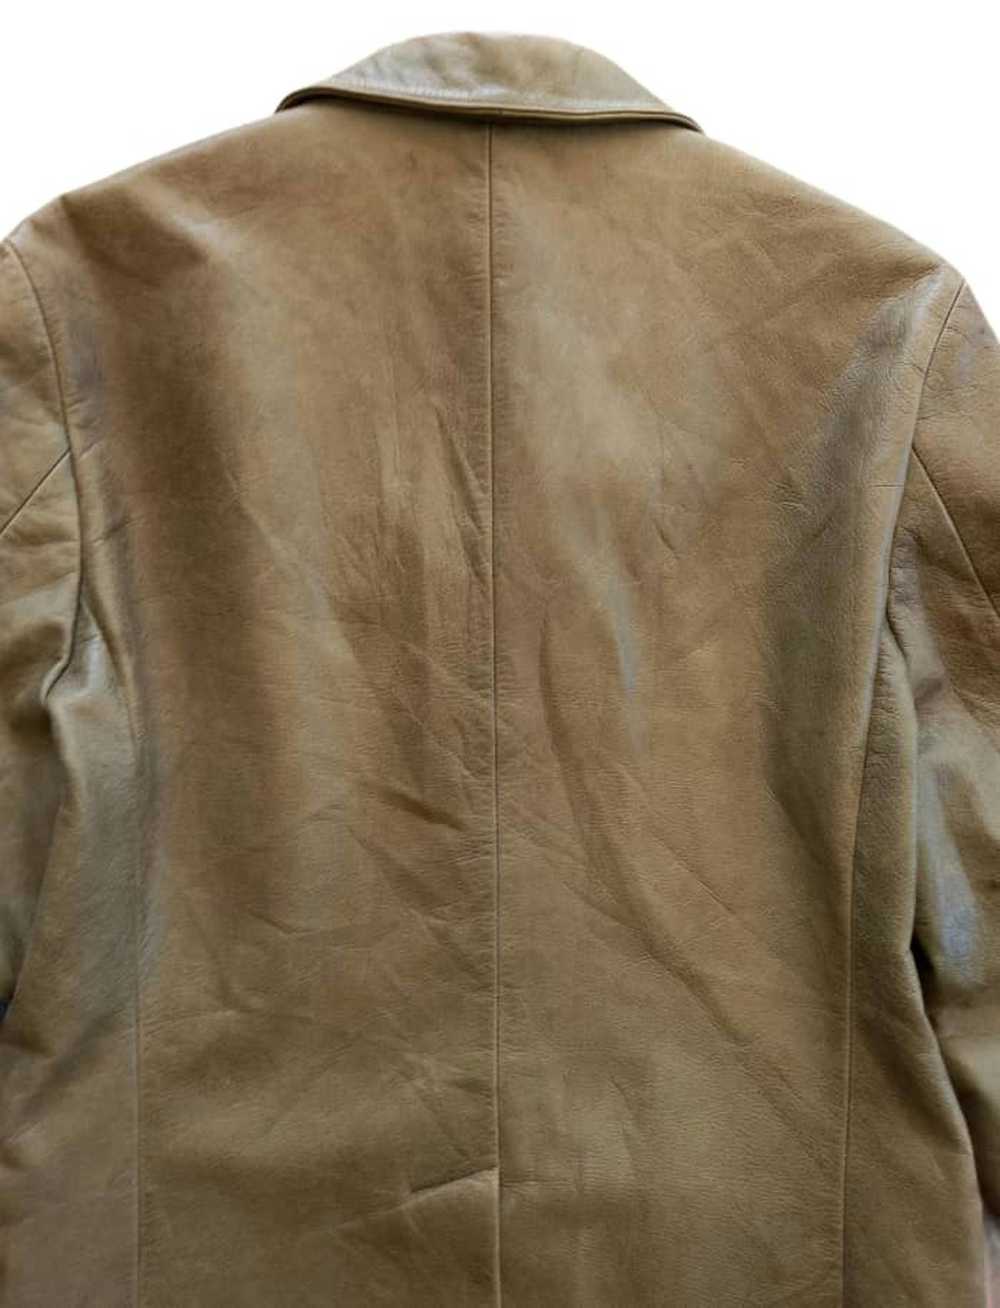 Japanese Brand × Jun Takahashi × Leather Jacket V… - image 8